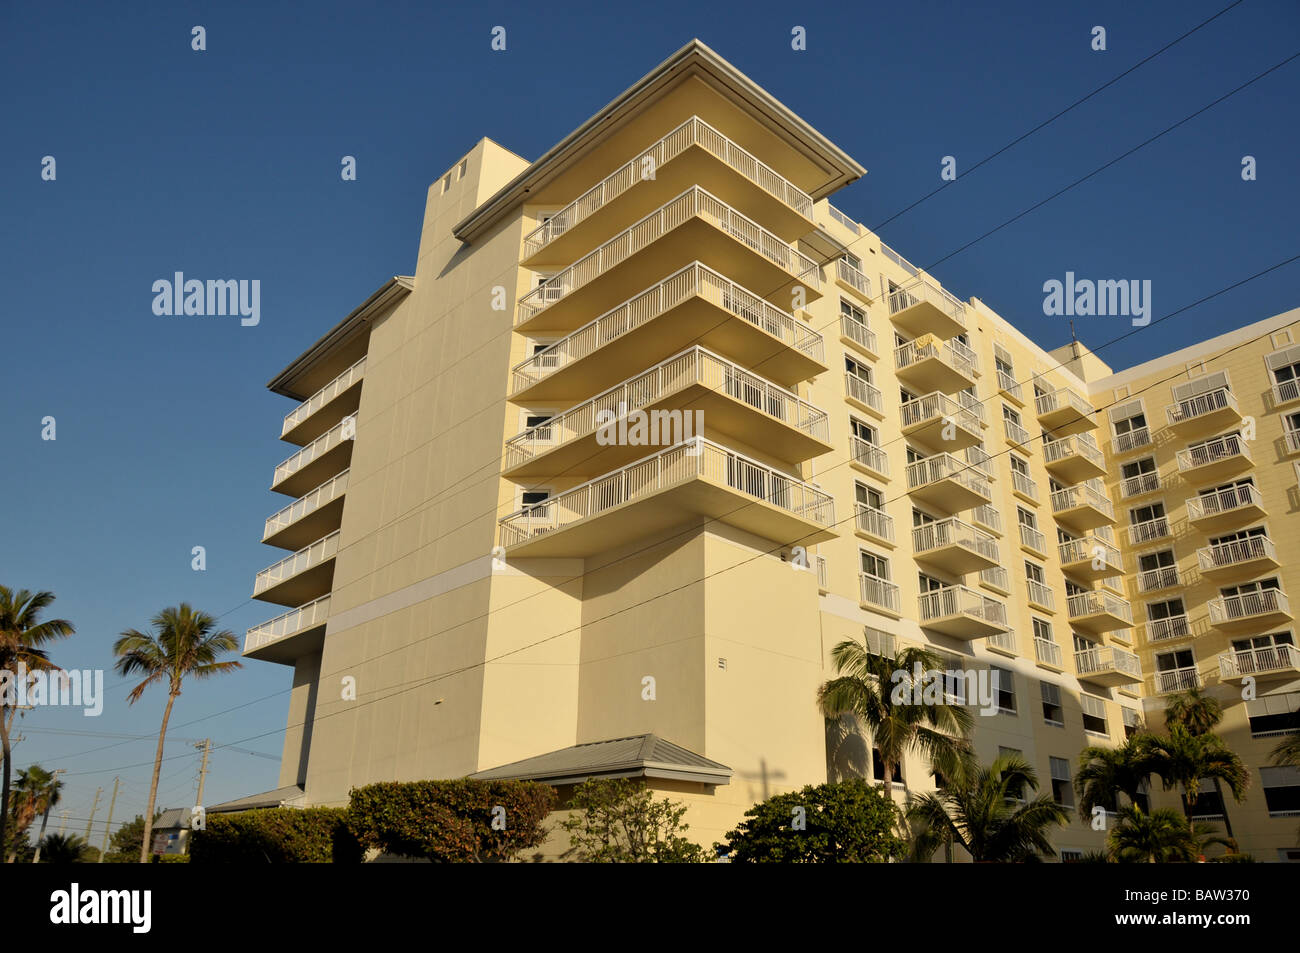 Luxury condominium building in Florida, USA. Stock Photo